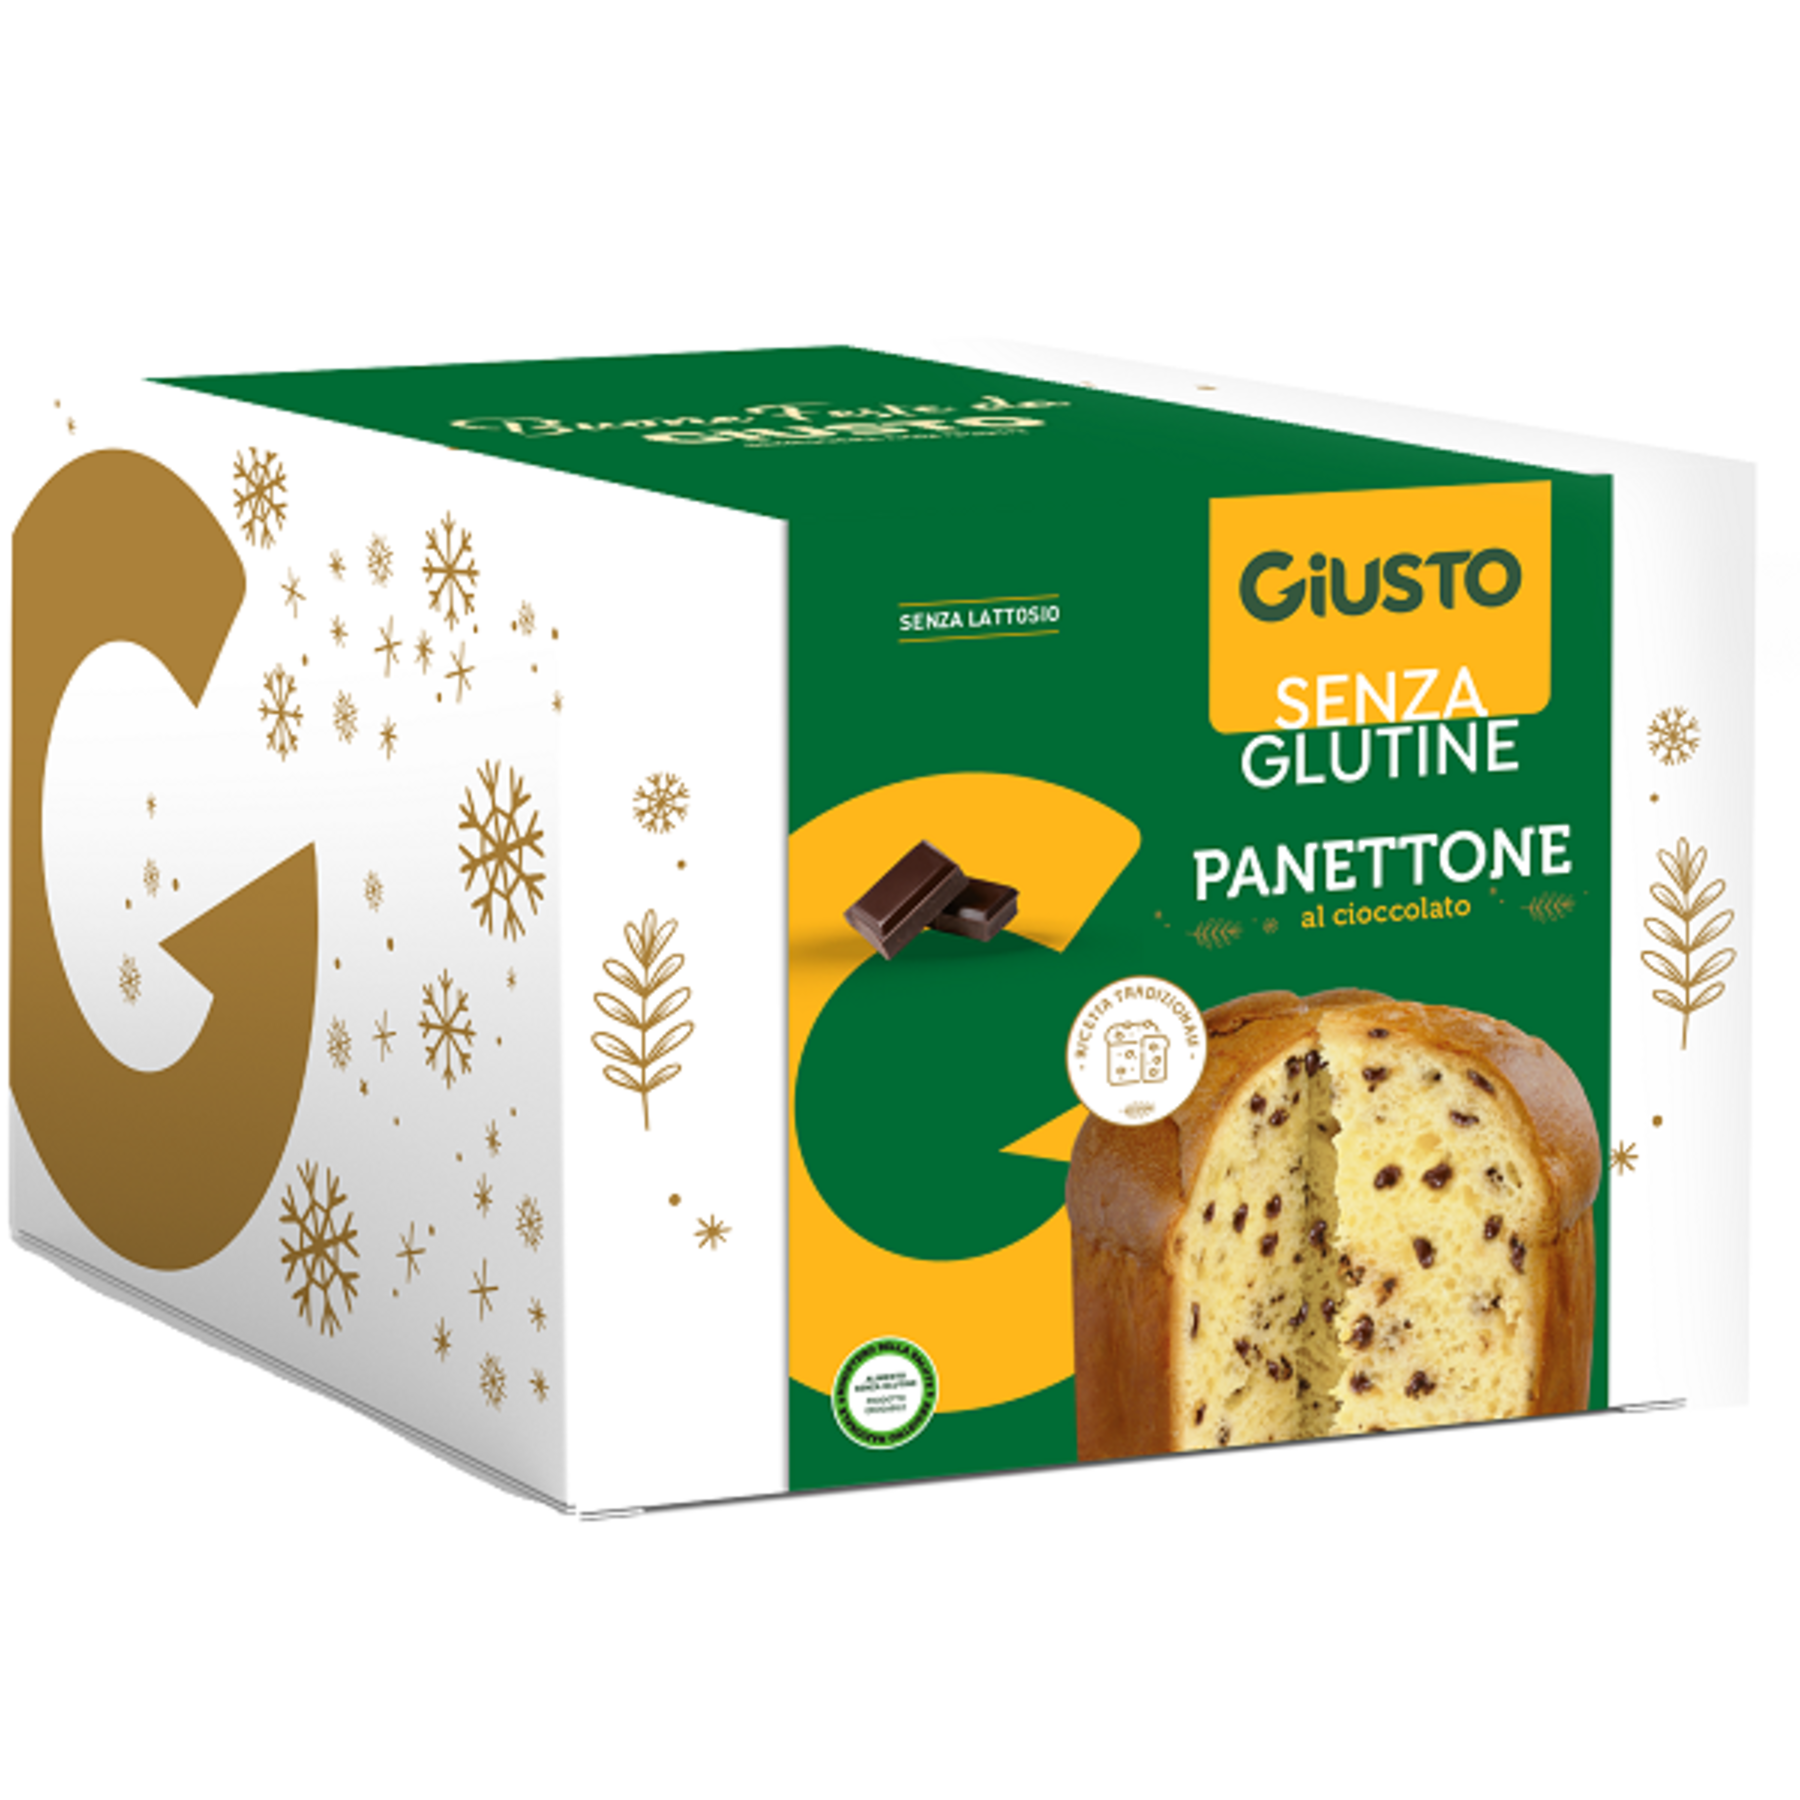 FARMAFOOD Srl Giusto senza glutine panettone al cioccolato 500 g